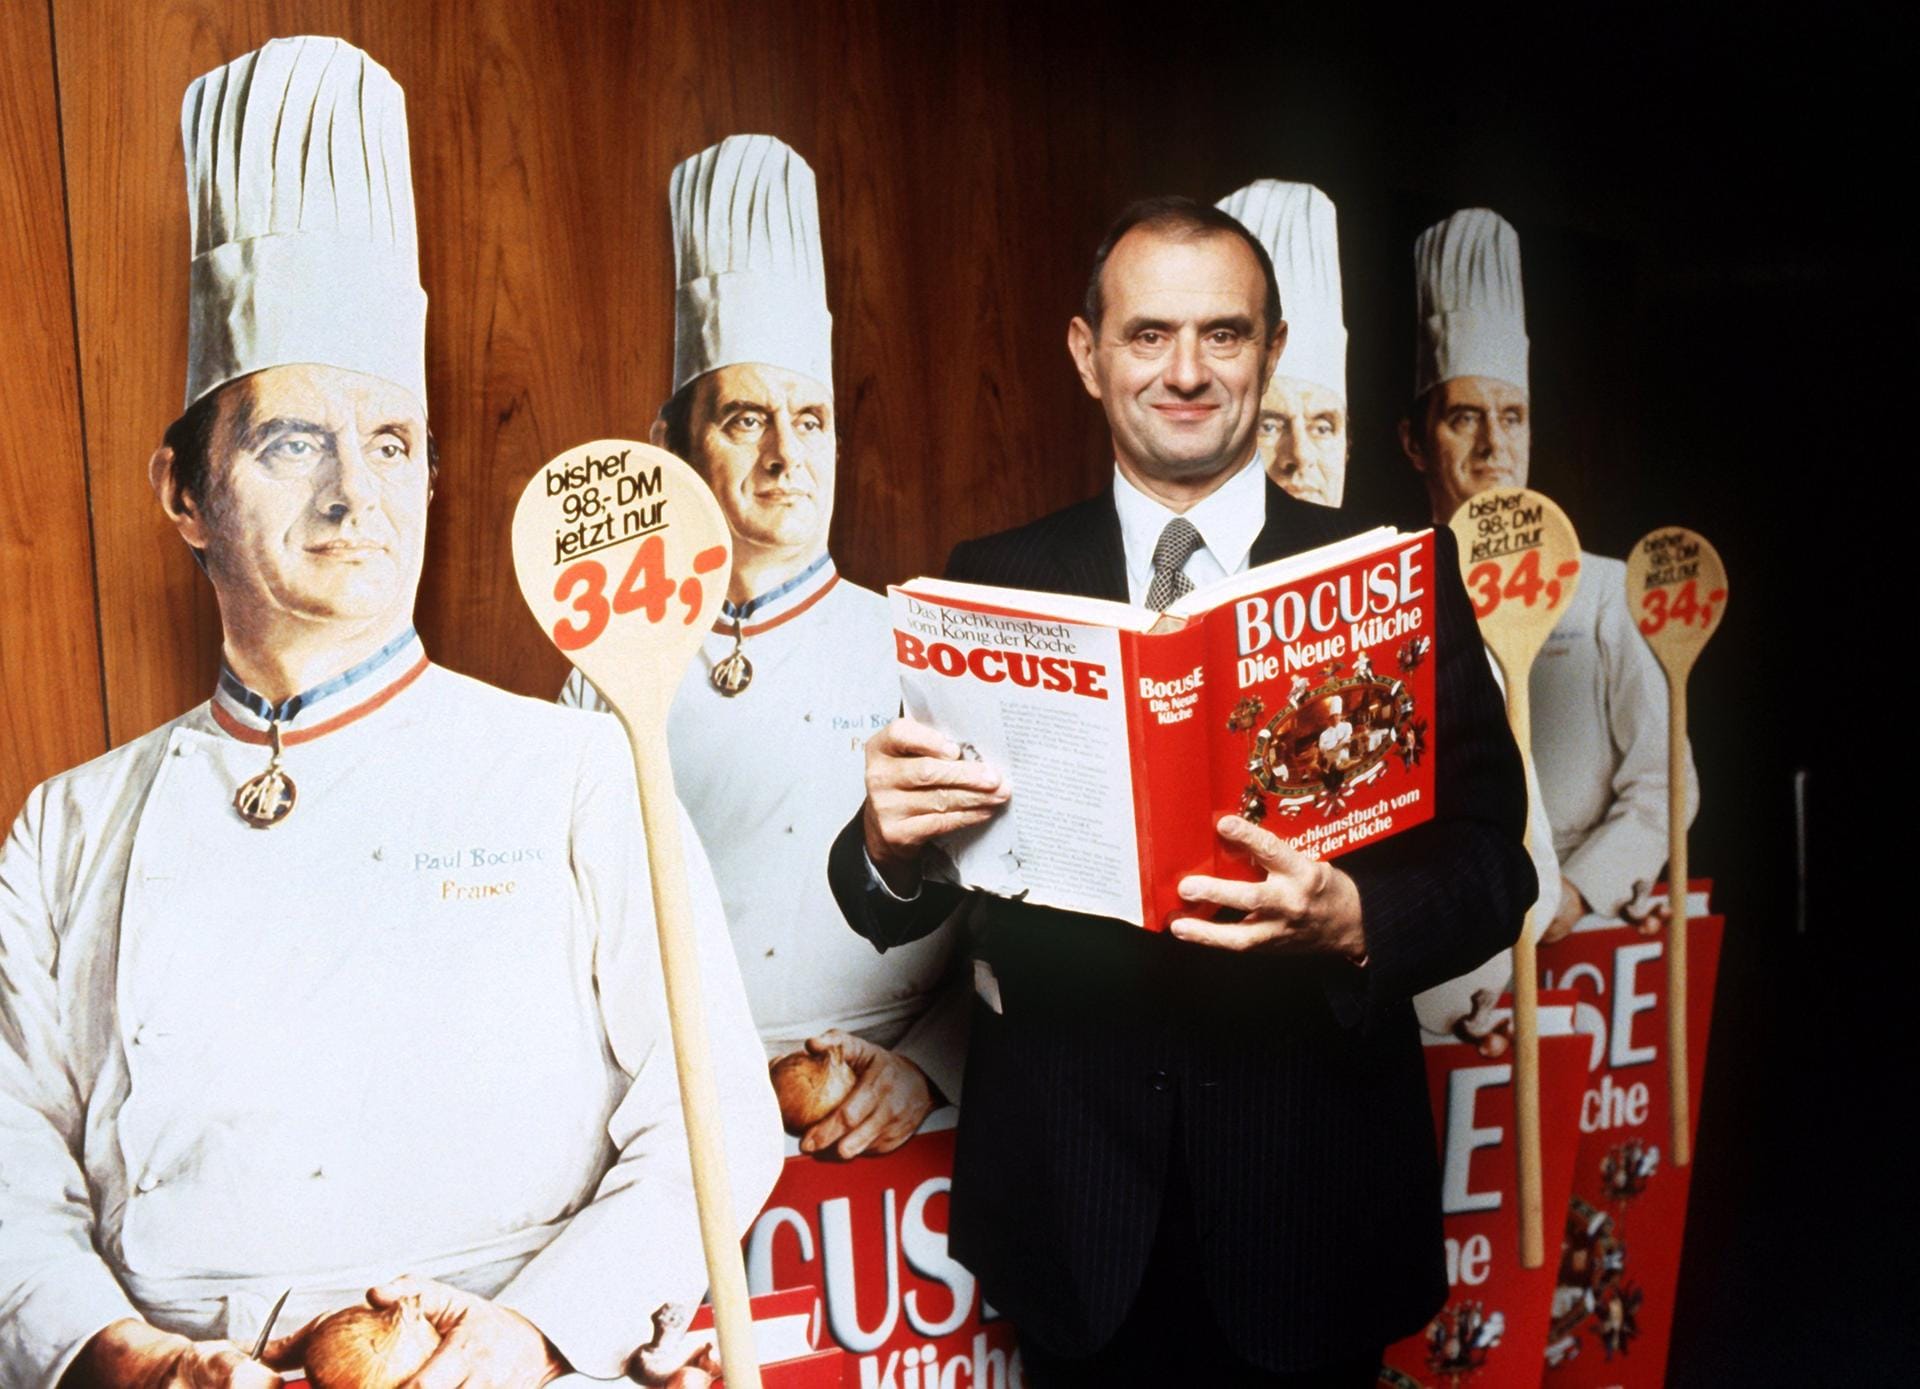 Mitte der 70-er-Jahre erschien in Deutschland und anderen Ländern sein Buch "Die neue Küche" - eine Küche, die auf erstklassige, frische Zutaten und beste Zubereitung setzte, während die Hausfrauen gerade Konserven und Tiefkühlkost für sich entdeckt hatten.